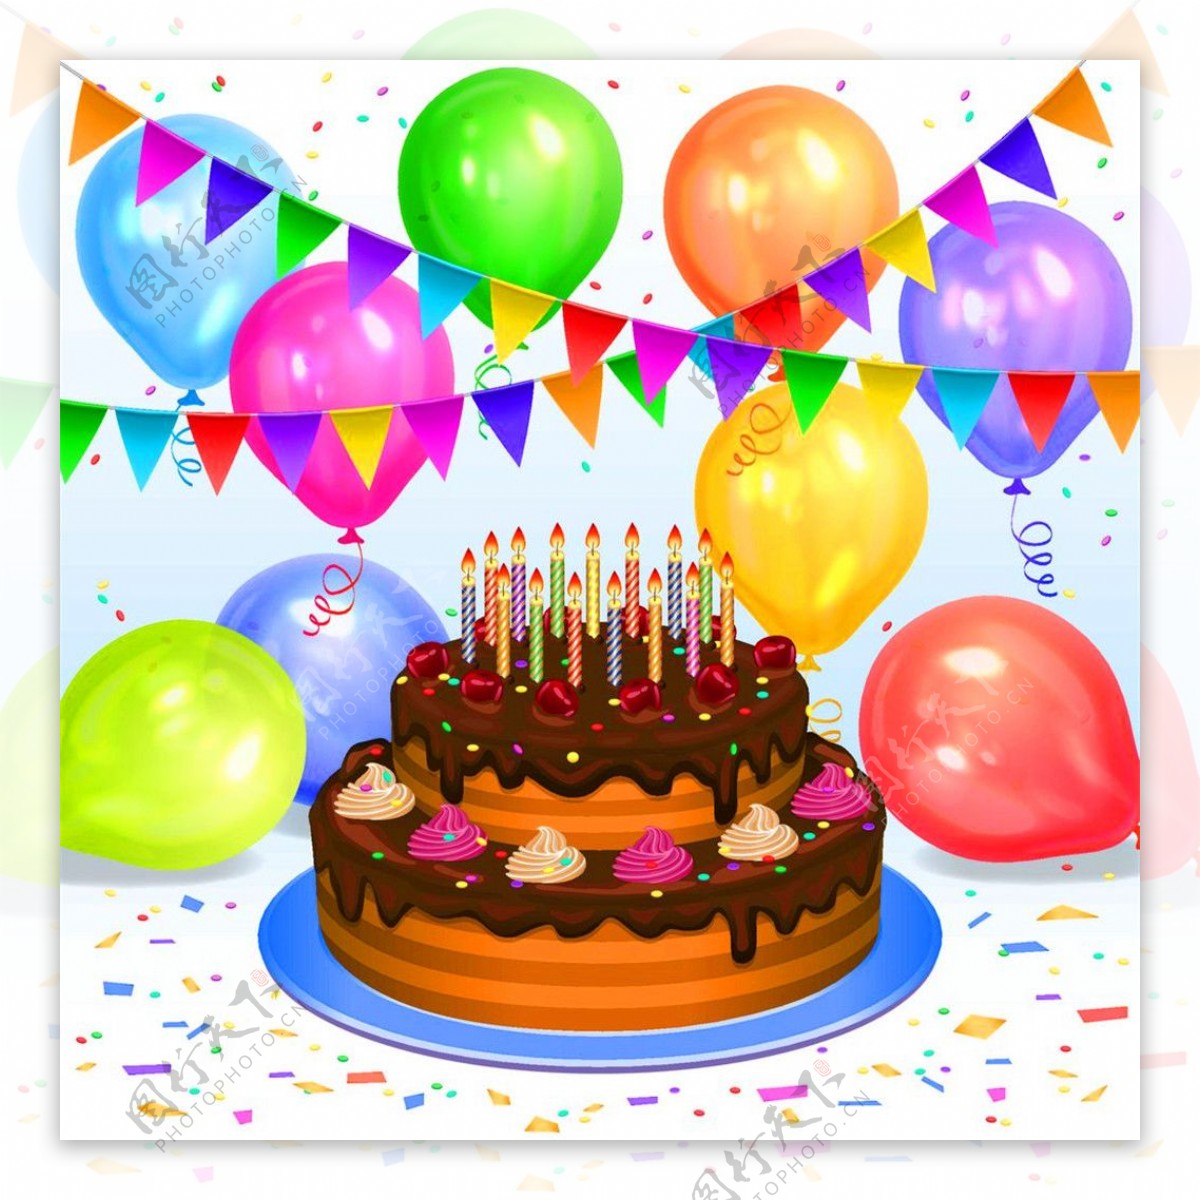 蛋糕和彩色生日气球图片